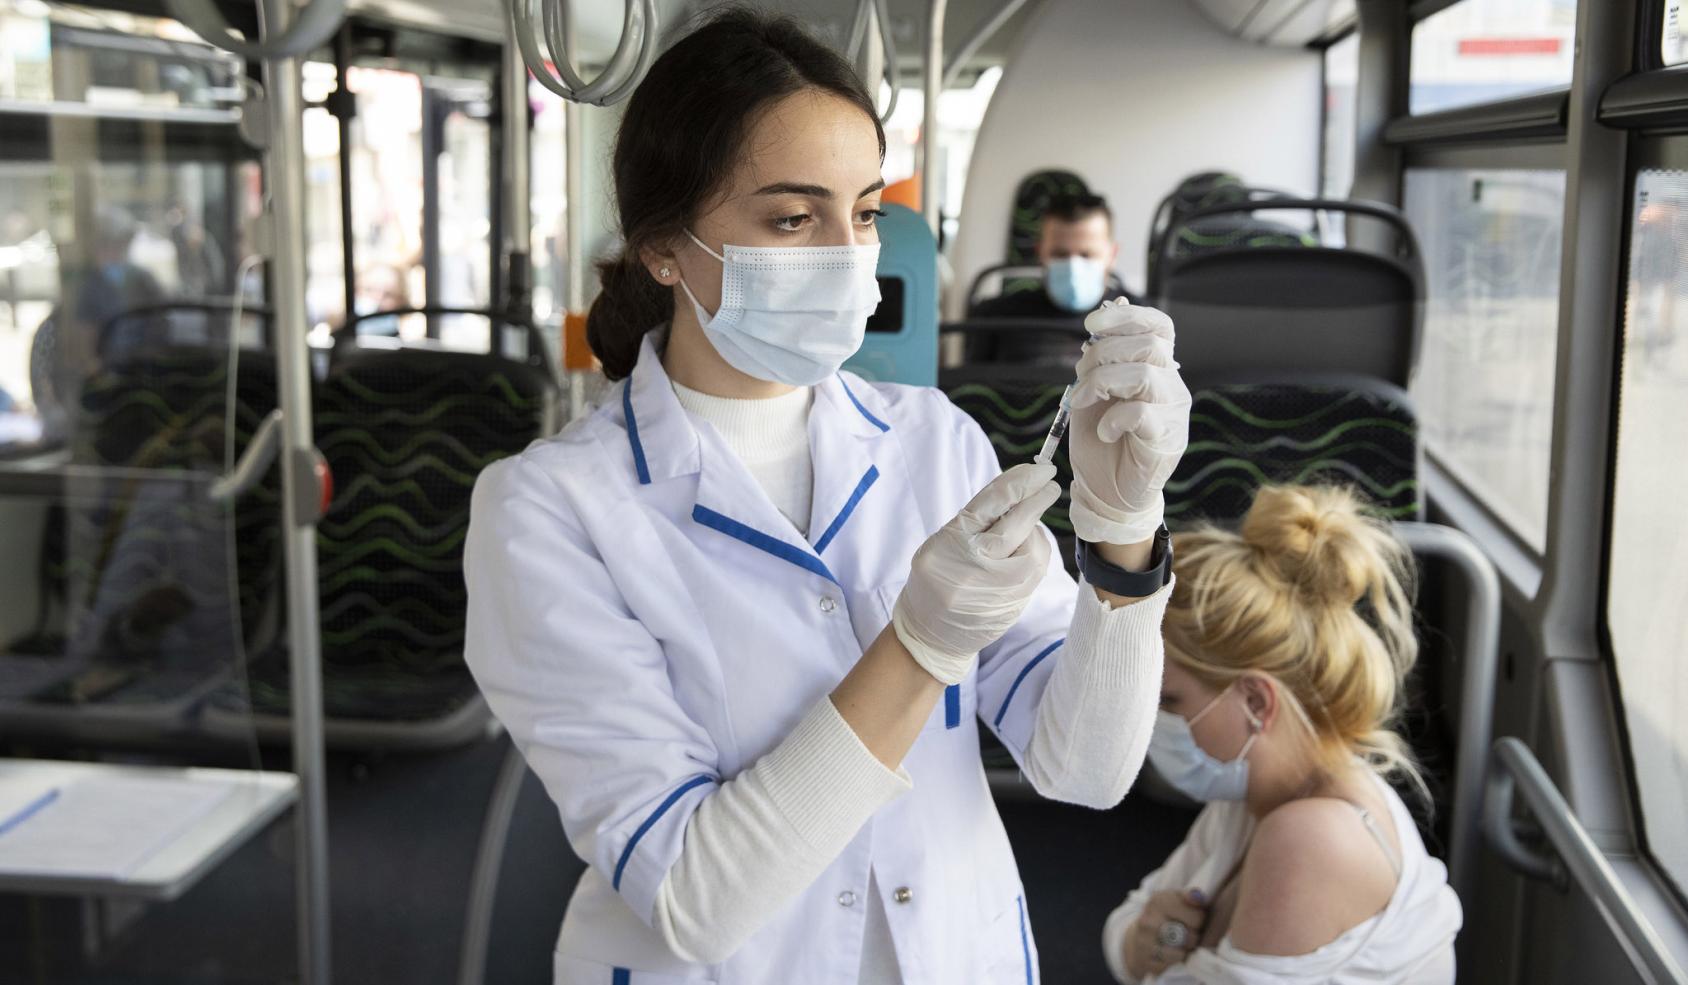 عاملة صحية تُعدّ لقاح كوفيد-19 لمريضة داخل حافلة مخصصة لتلقي اللقاحات.